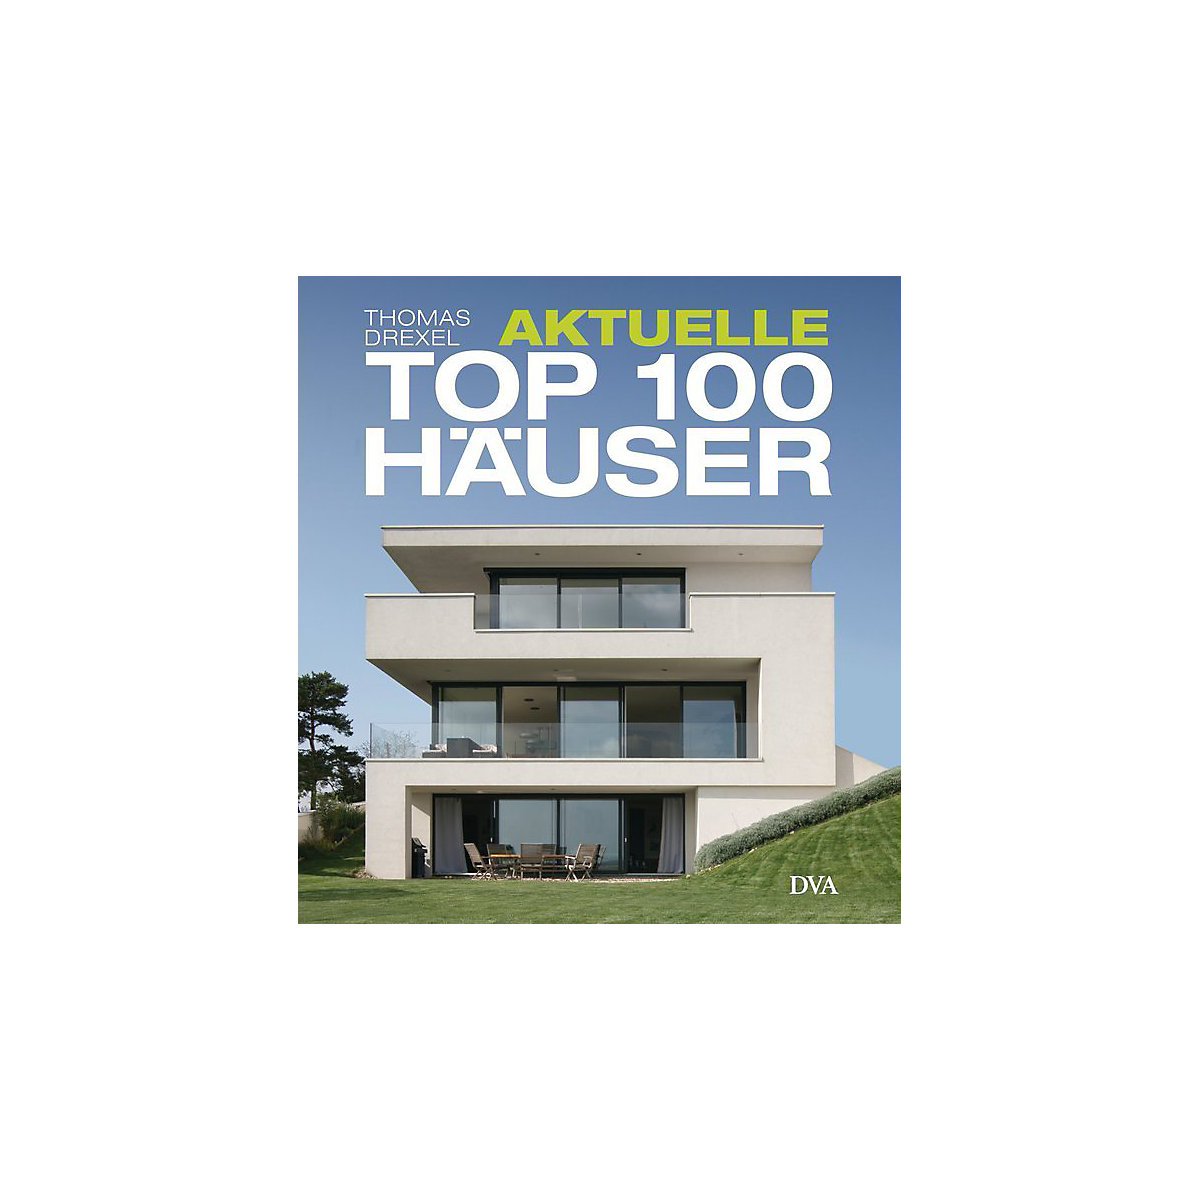 Aktuelle TOP 100 Häuser